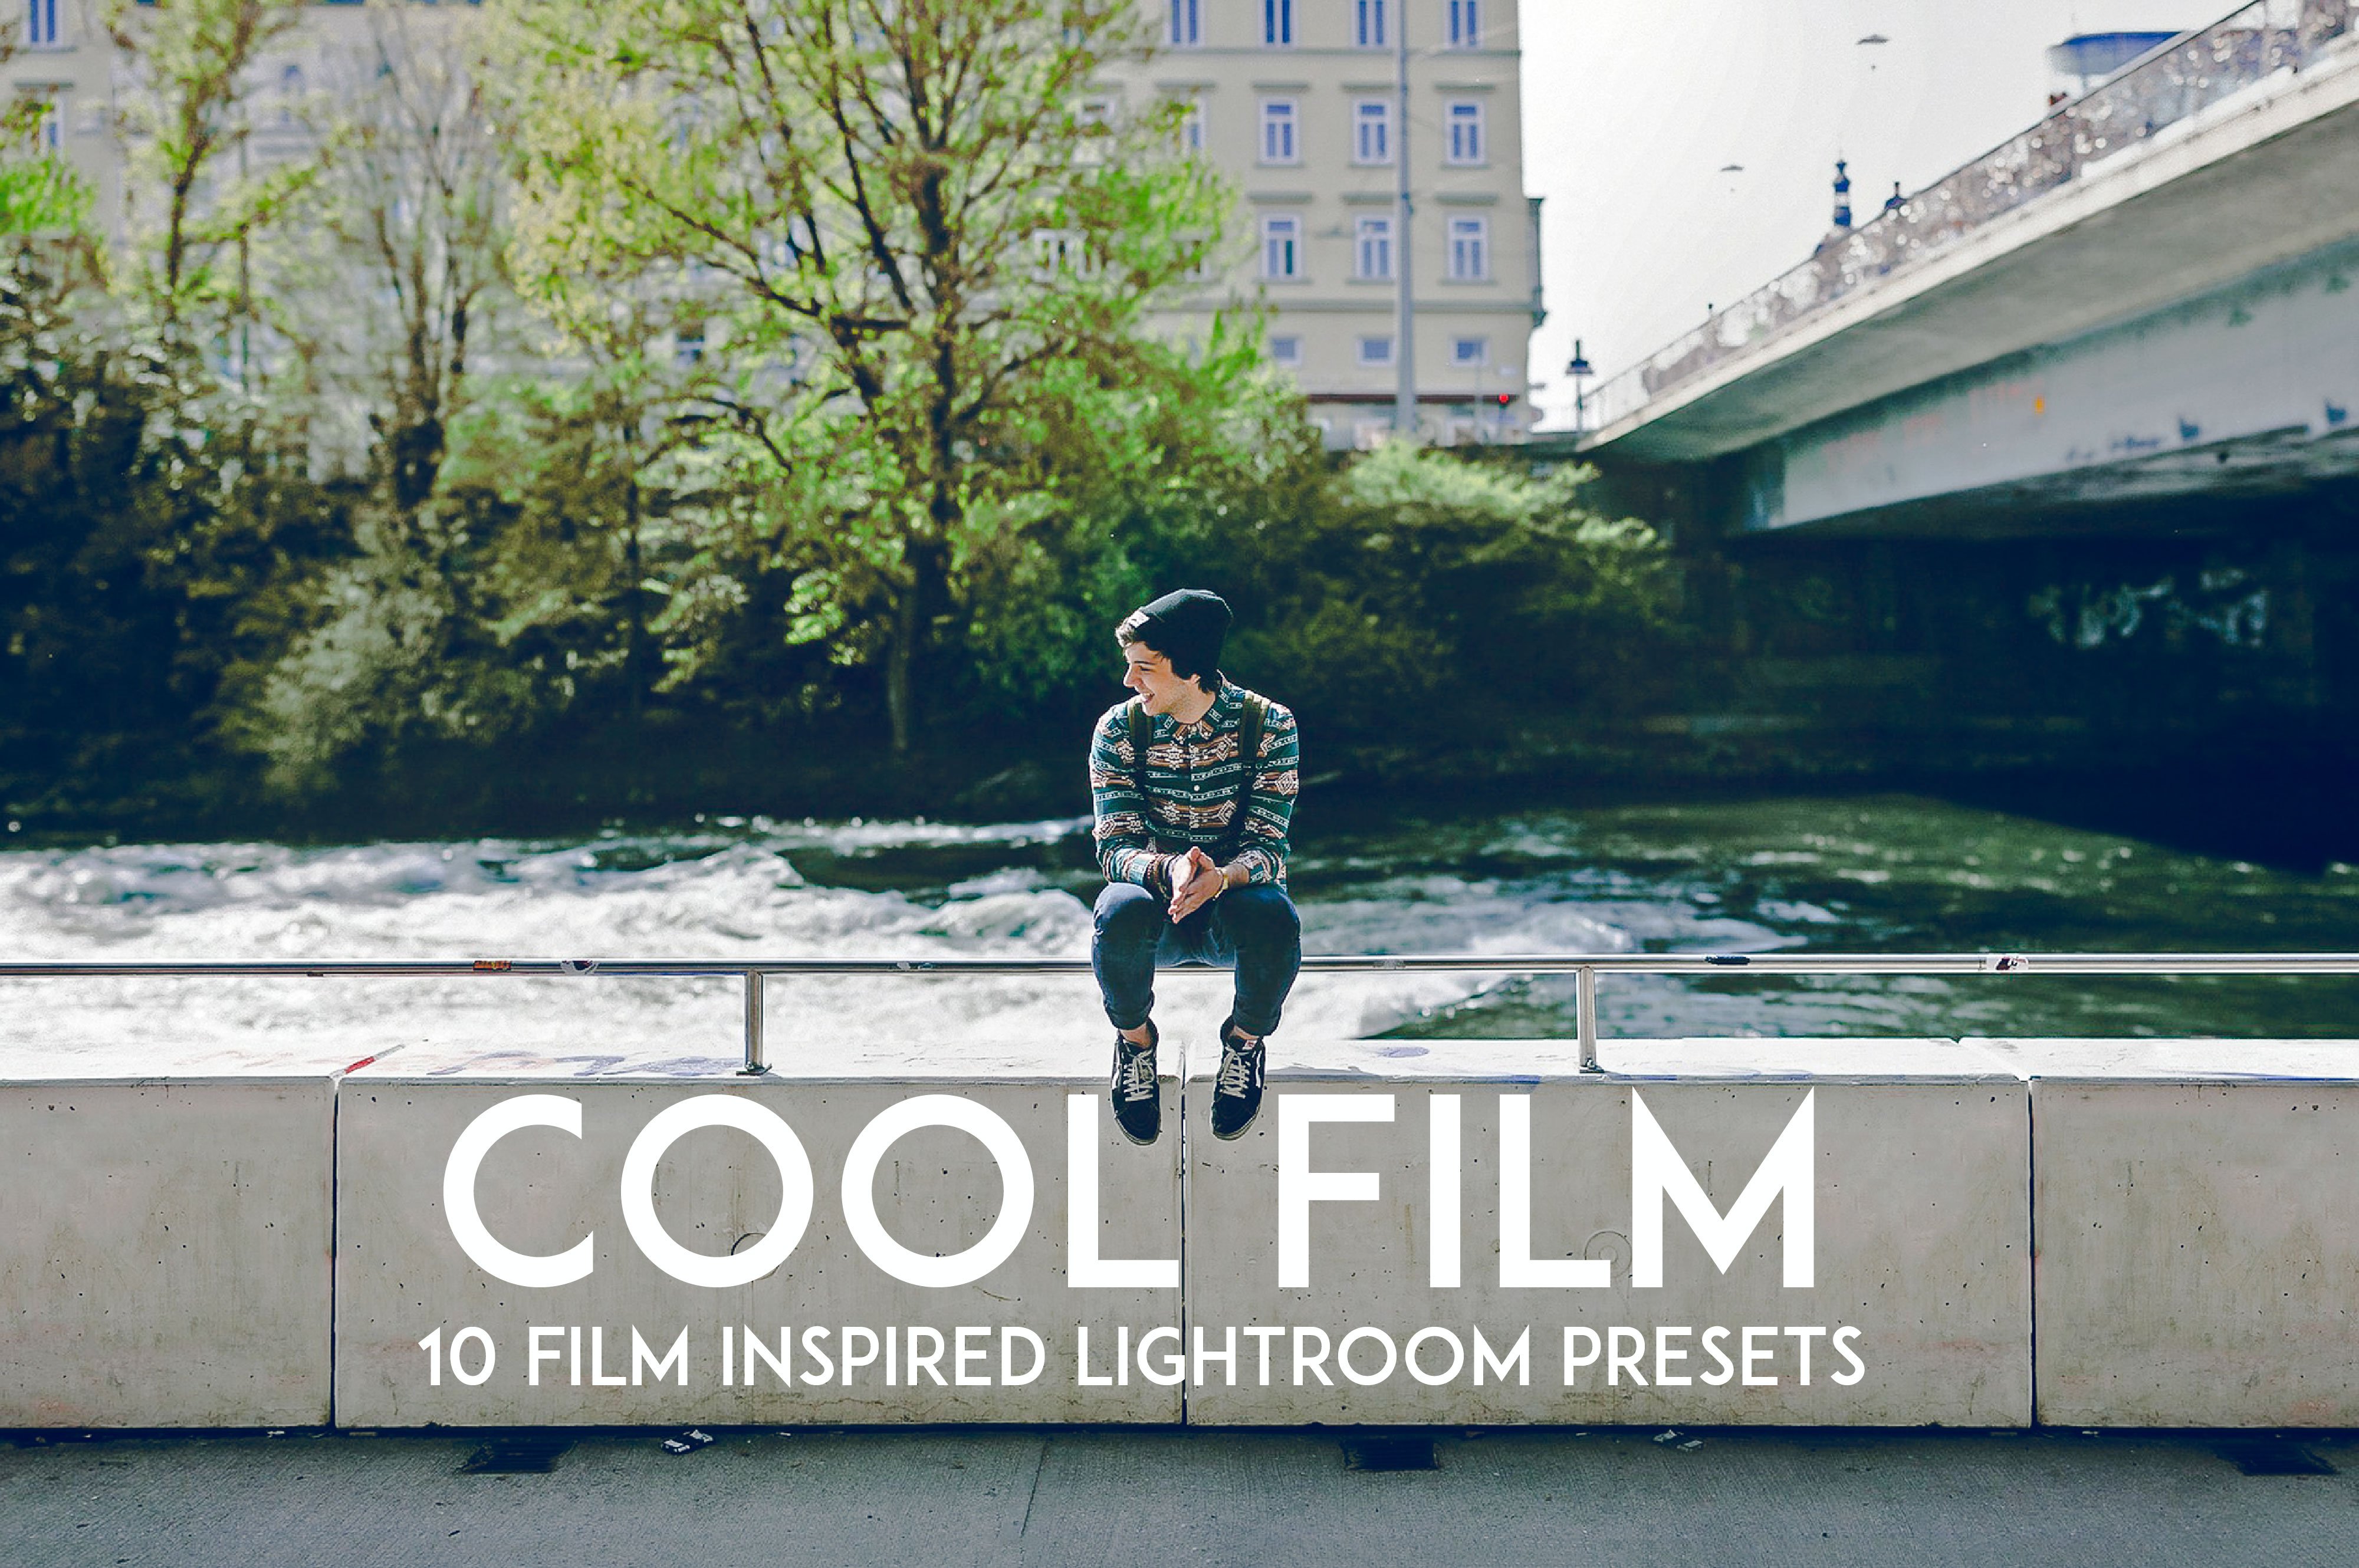 Cool Film Lightroom Preset Packcover image.